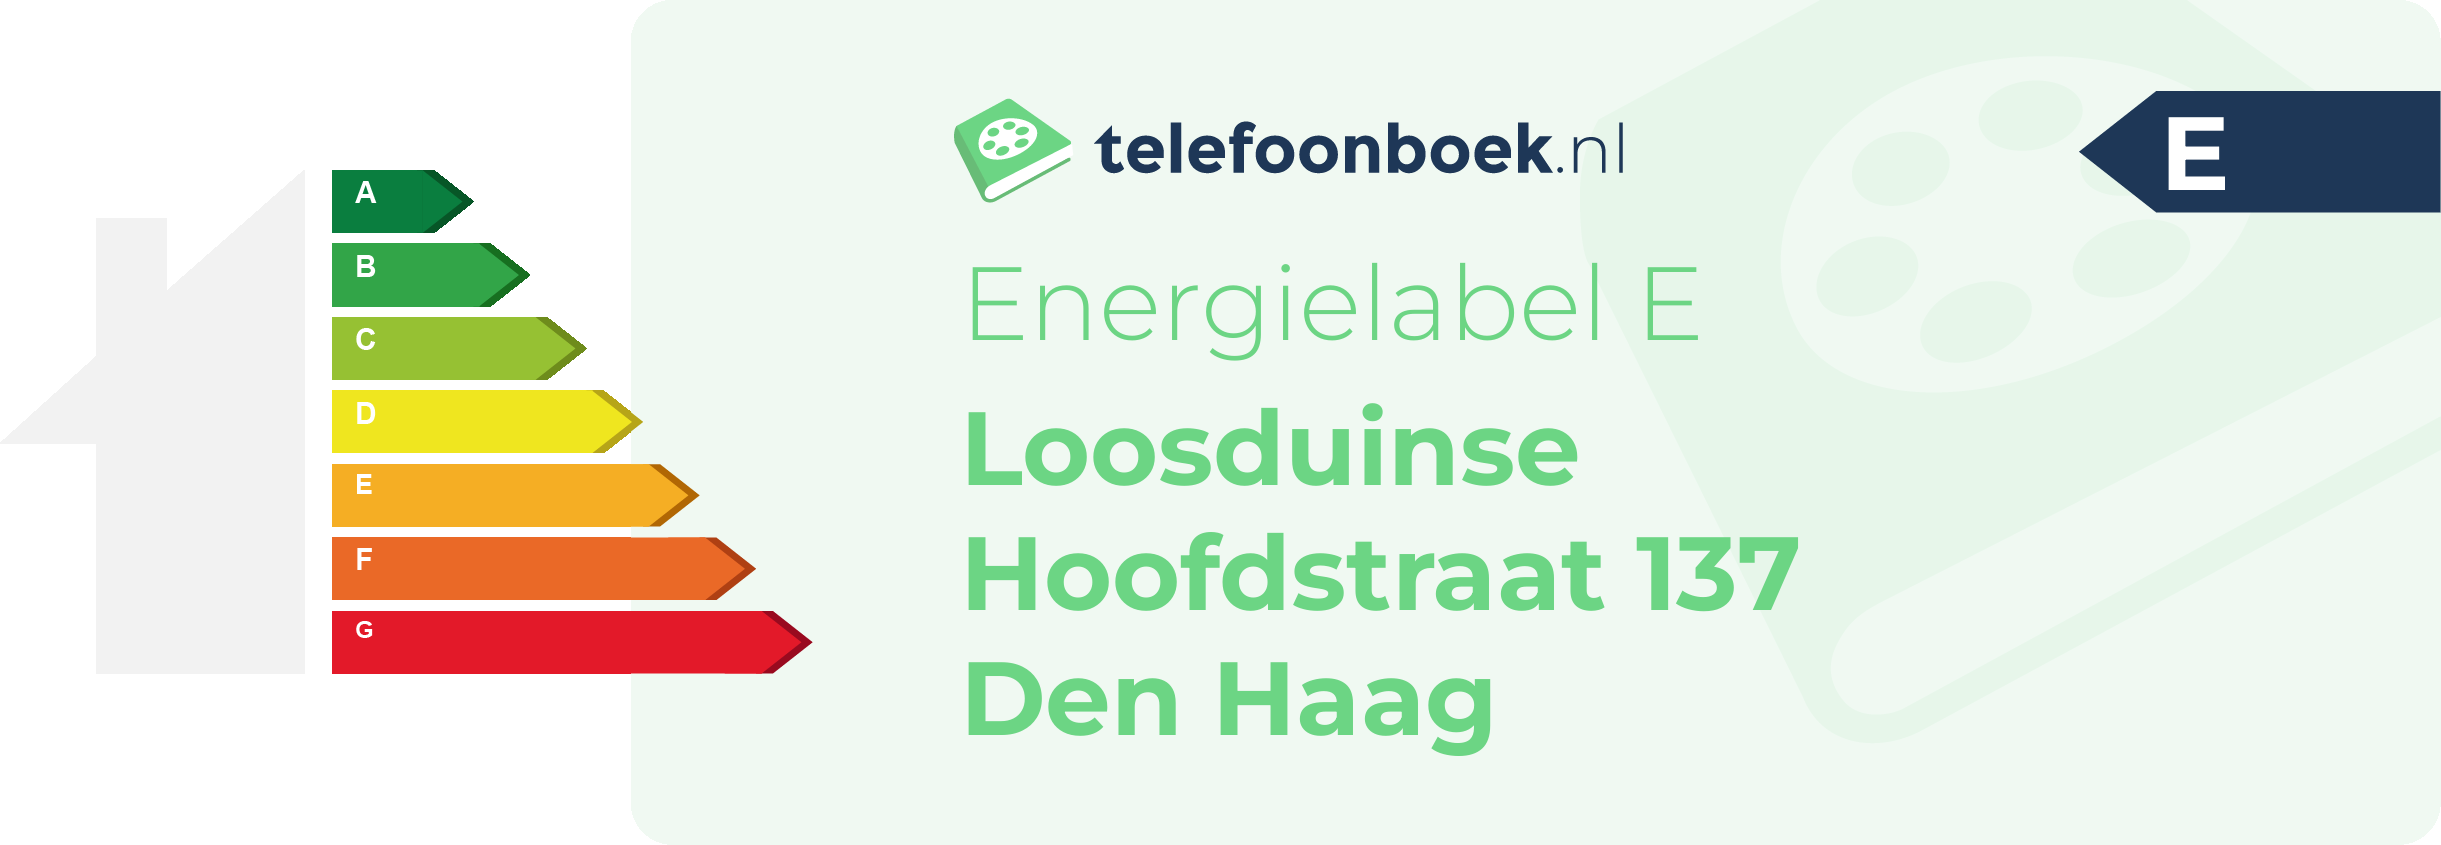 Energielabel Loosduinse Hoofdstraat 137 Den Haag